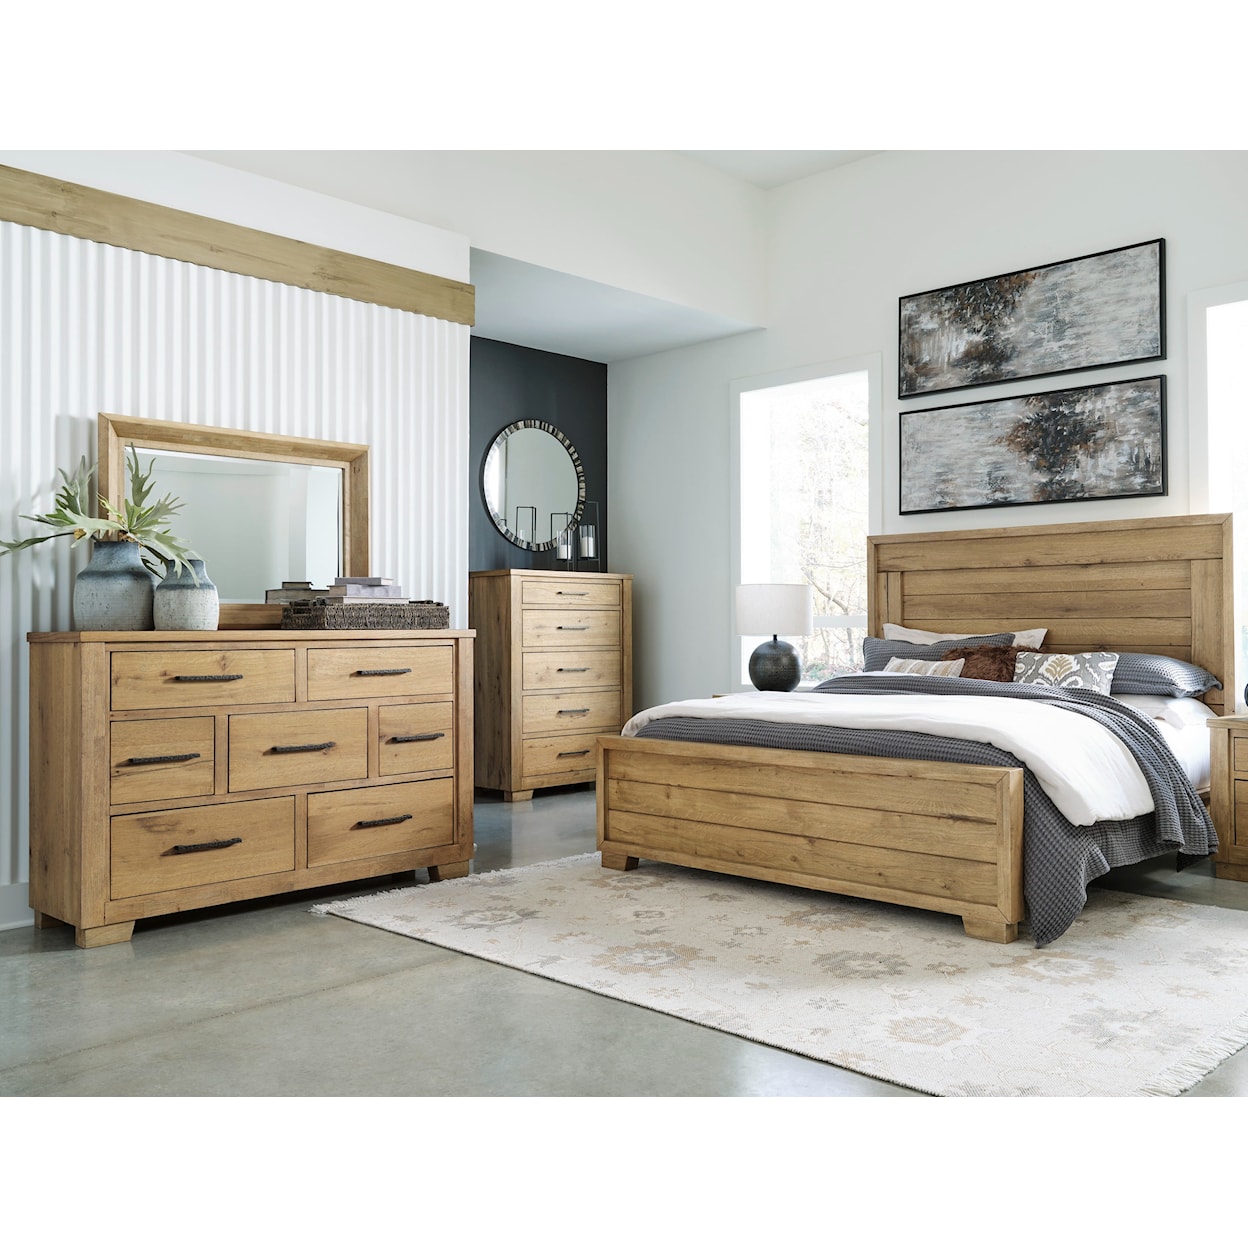 Ashley Furniture Signature Design Galliden Queen Bedroom Group